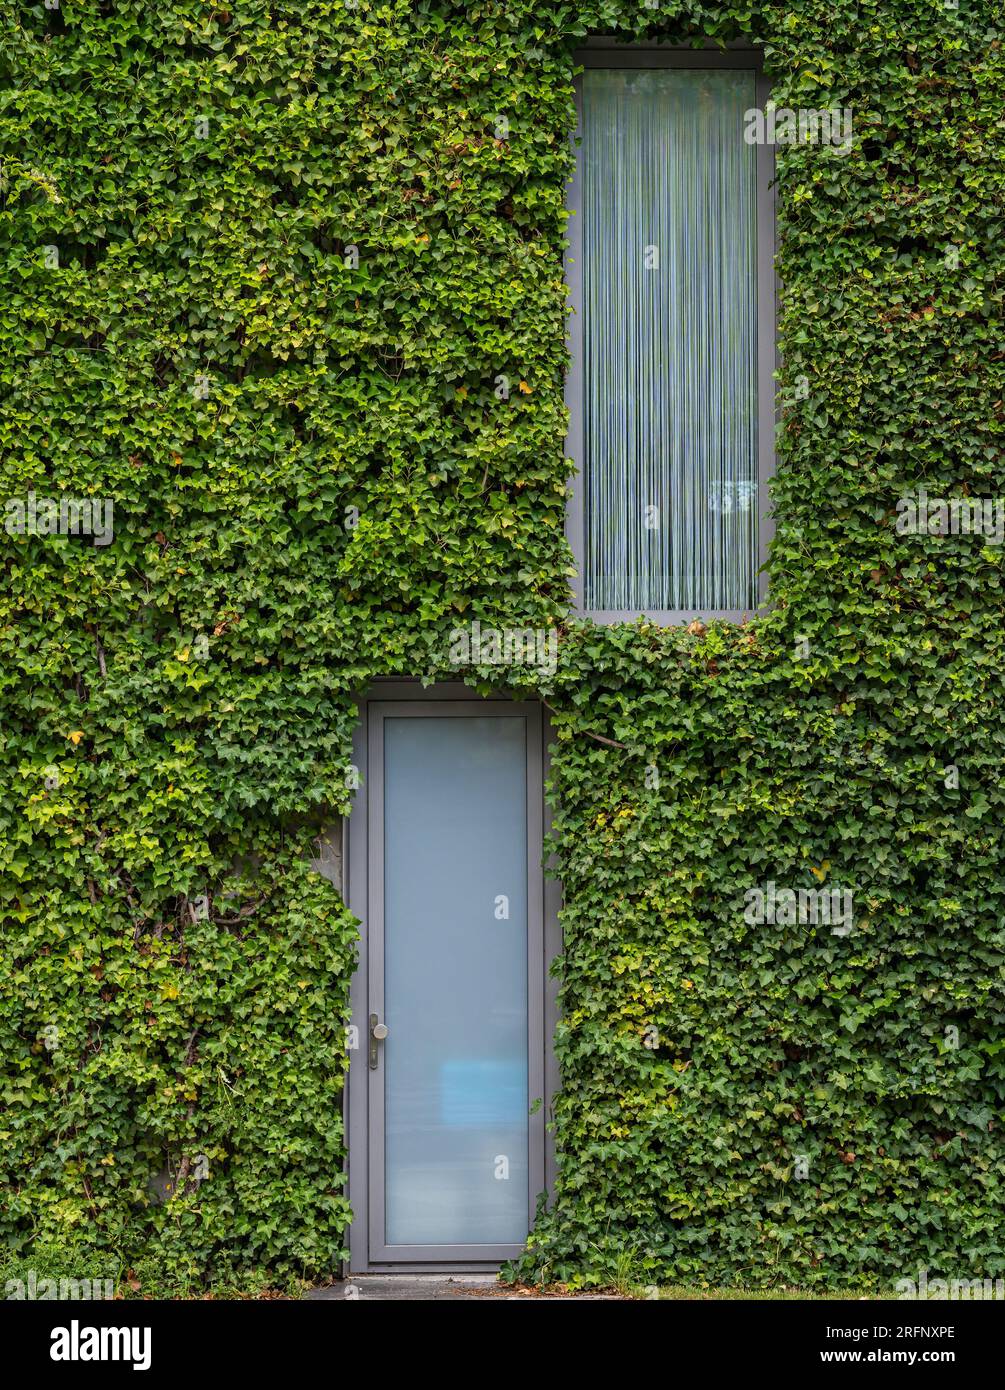 Vert, mur vivant de la maison moderne, plante grimpante couvrant l'extérieur de la maison autour de la porte et de la fenêtre Banque D'Images